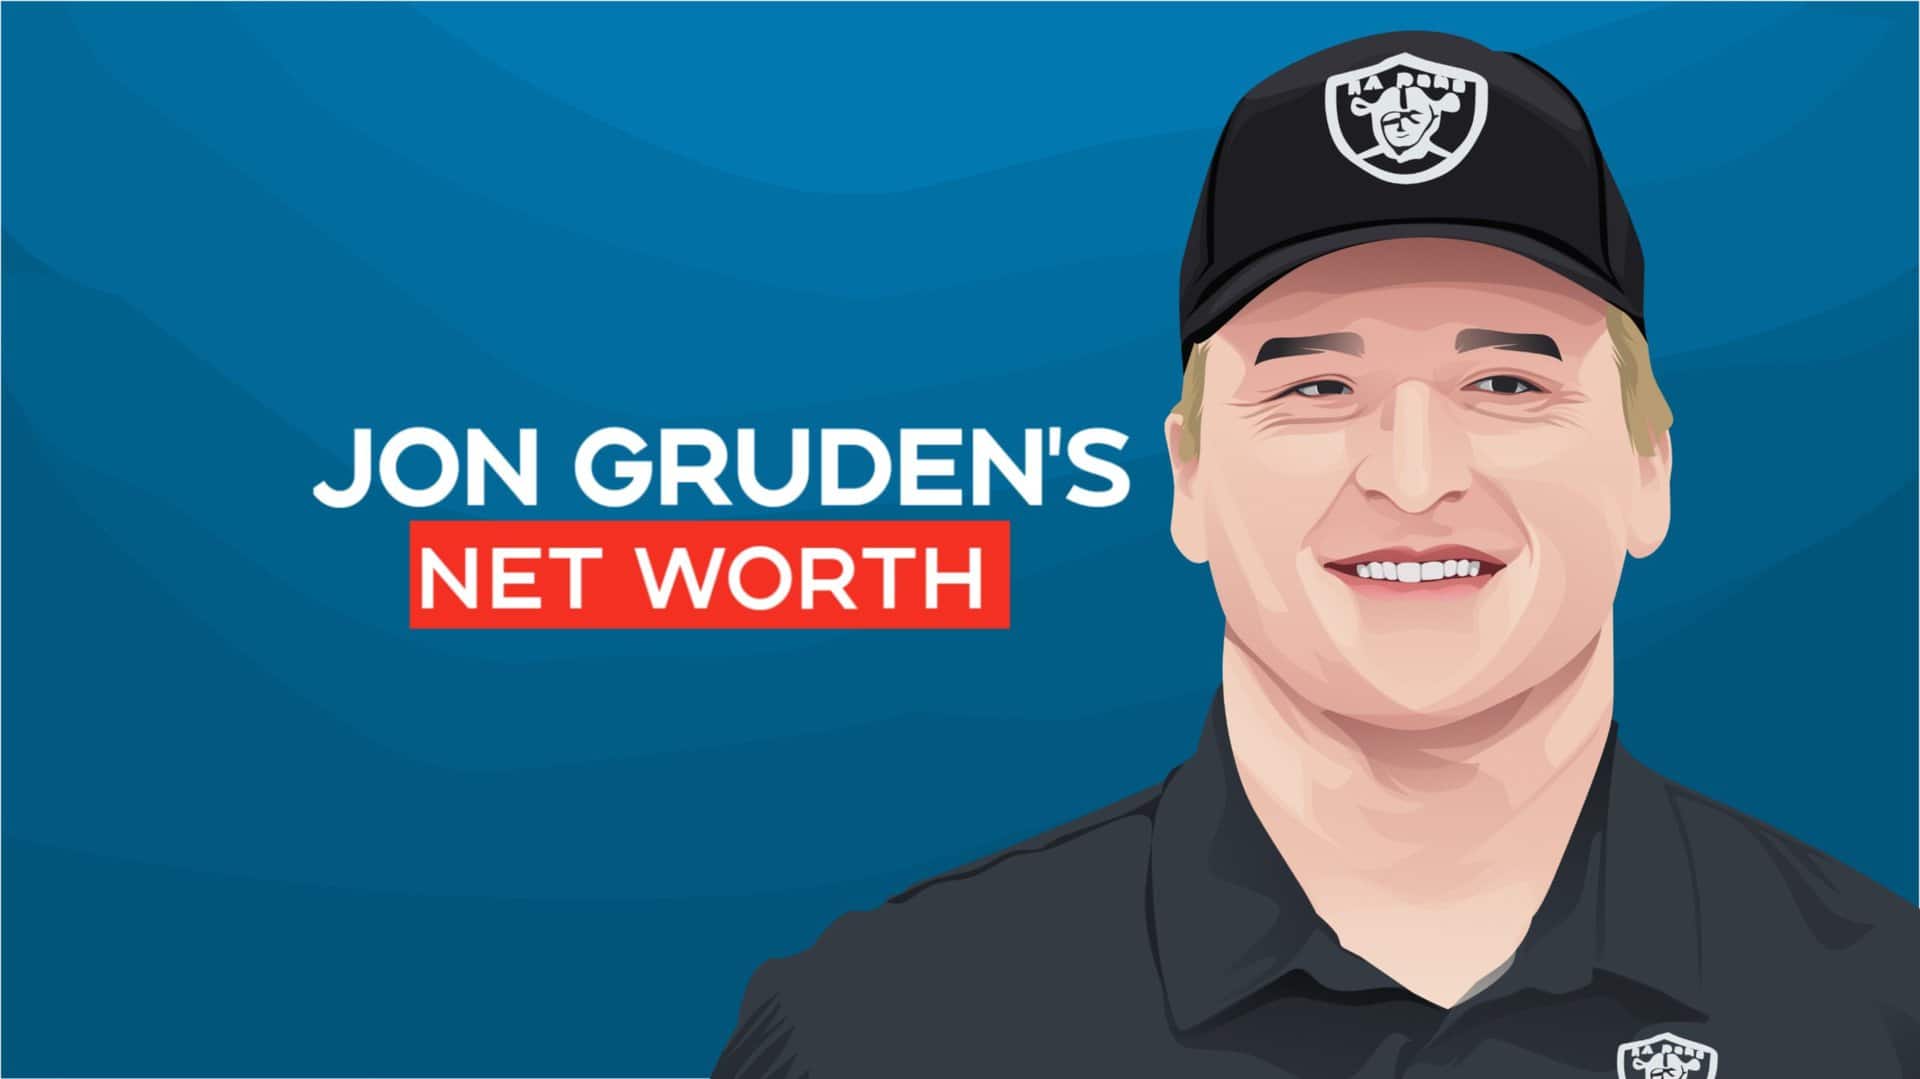 Jon Gruden's net worth